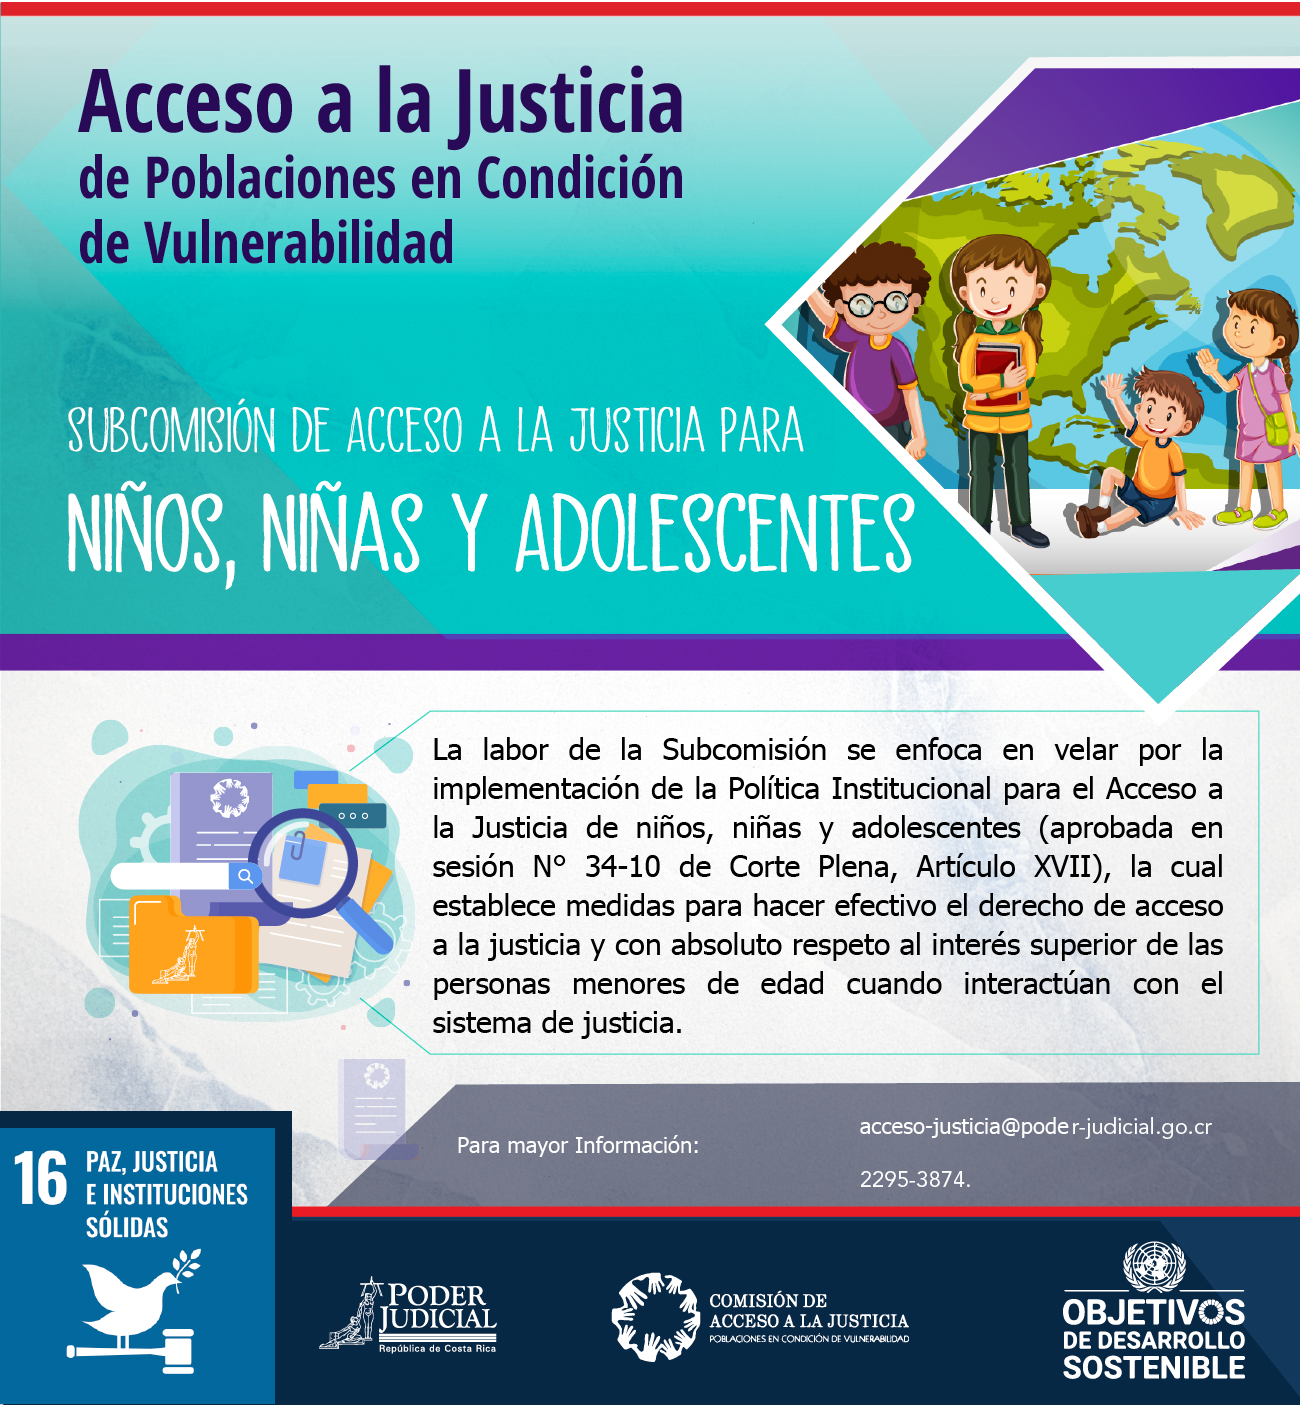 Subcomisión de Acceso a la Justicia para Niños, Niñas y Adolescentes